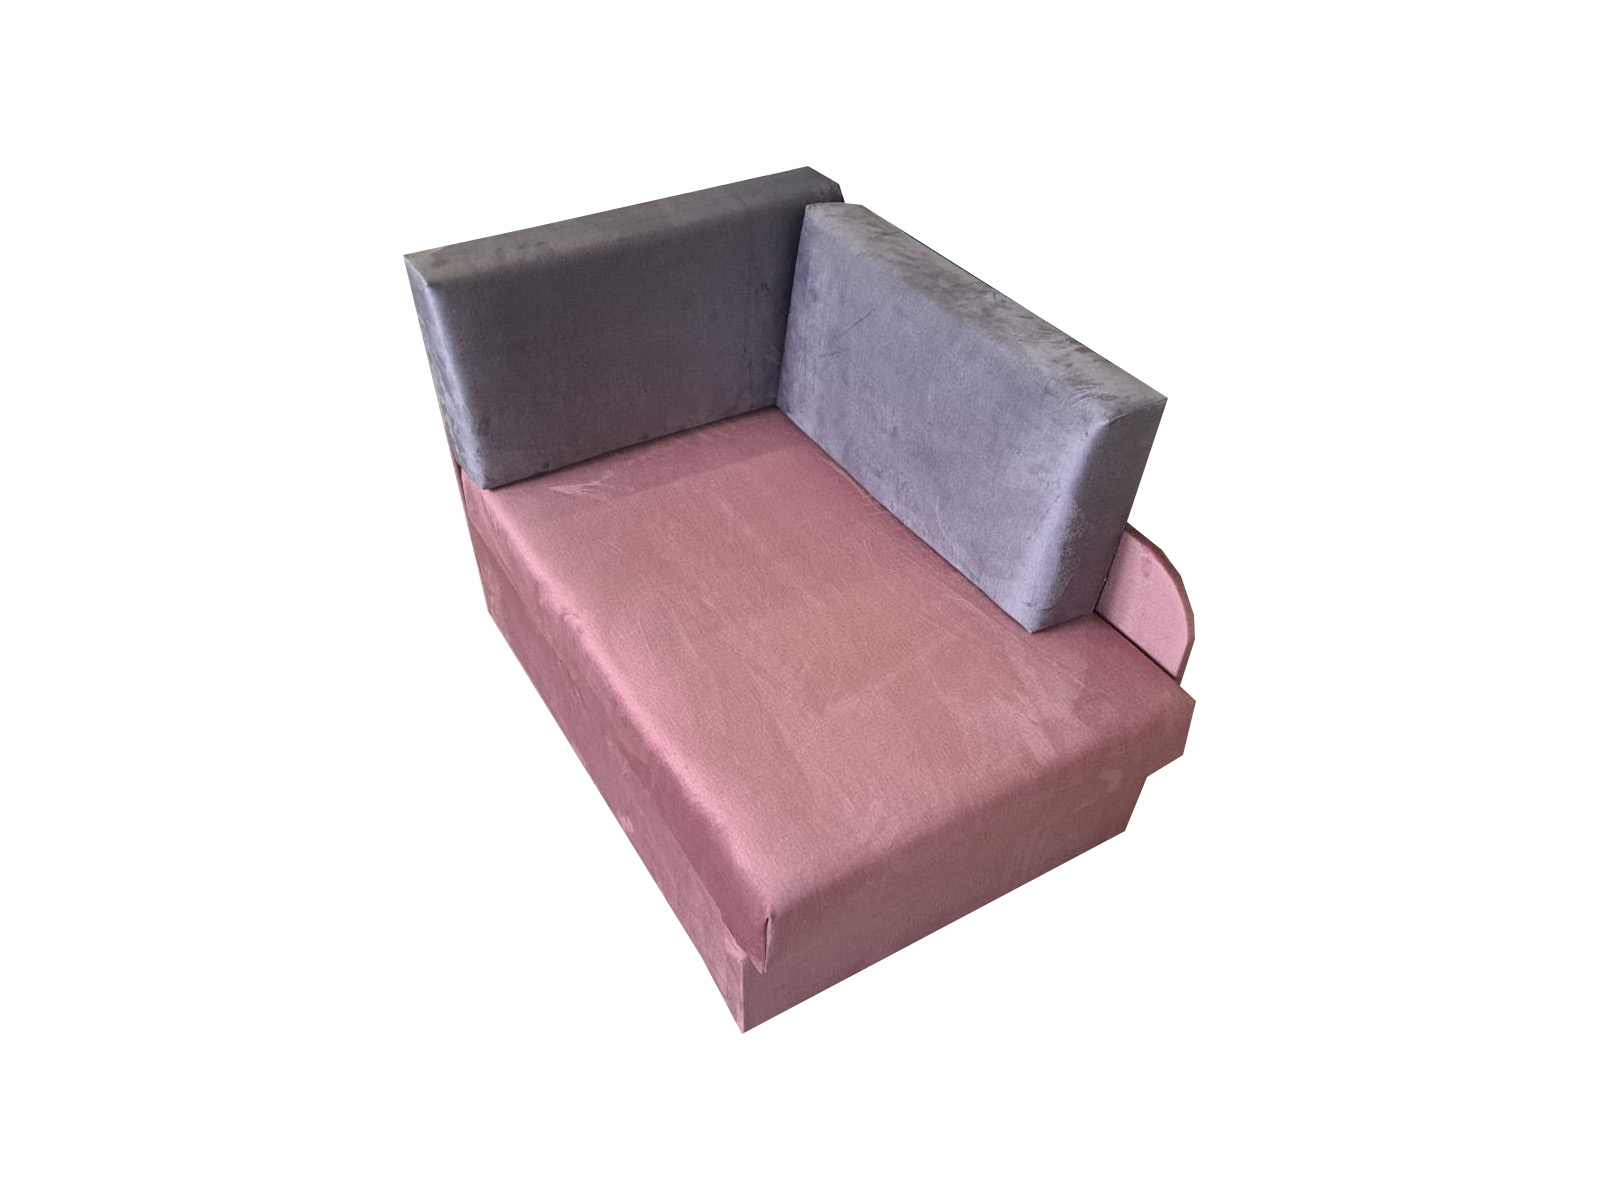 Łóżko dla Dziecka KUBUŚ w kolorze różowo-szarym – Prawy